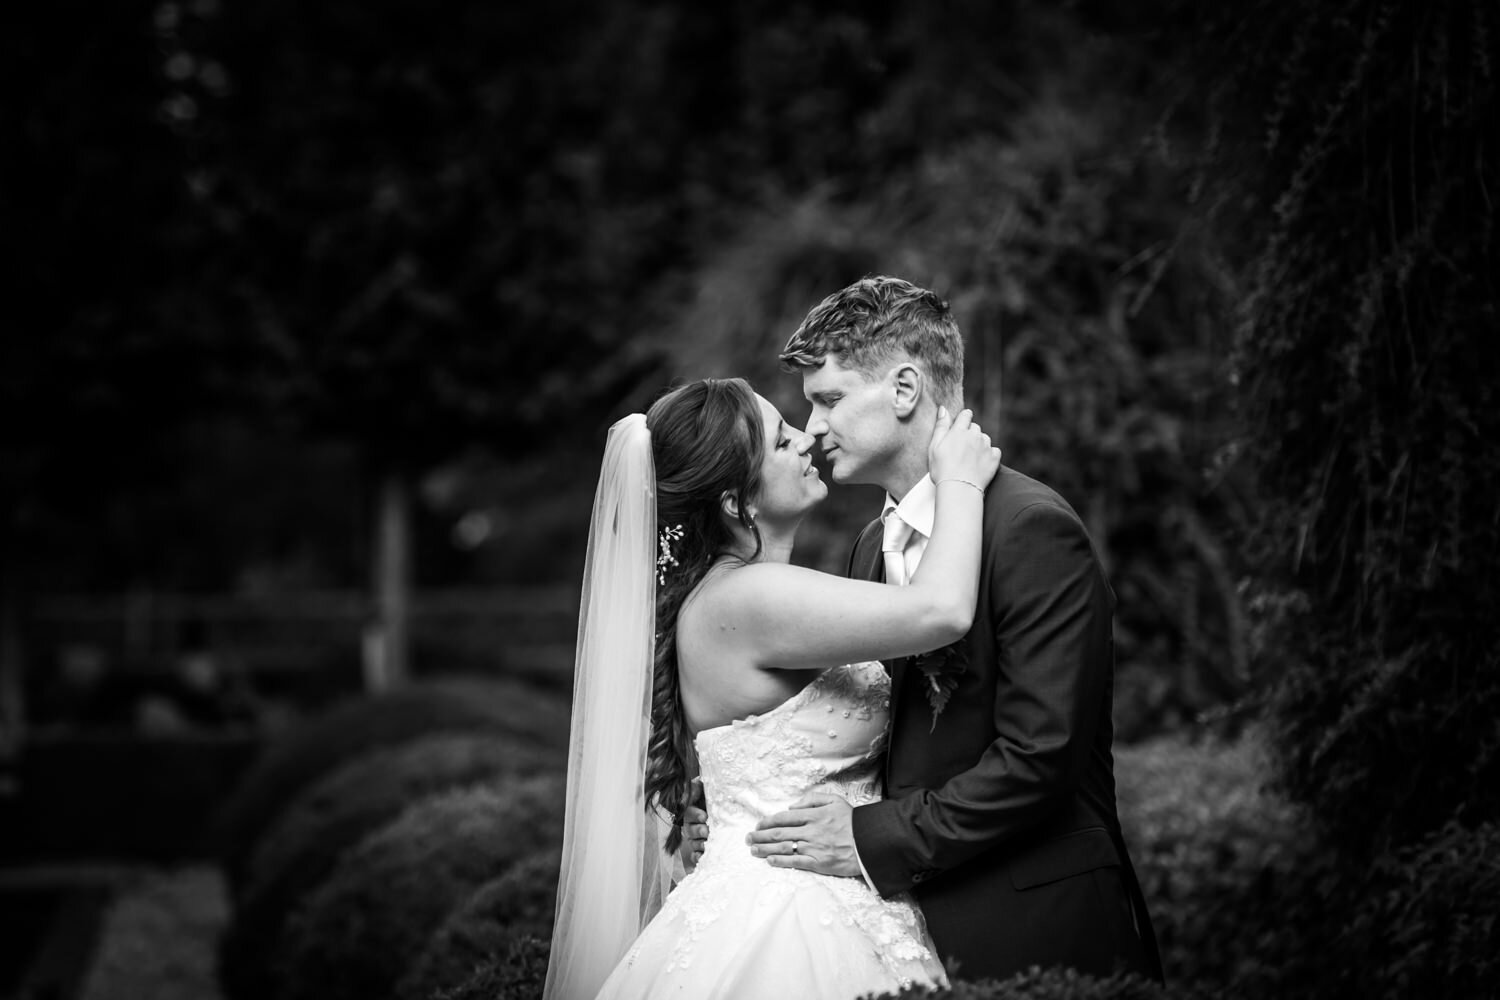 De fotoshoot tijdens de bruiloft. Spontane foto's met mooie achtergronden, zodat het bruidspaar eruit springt.